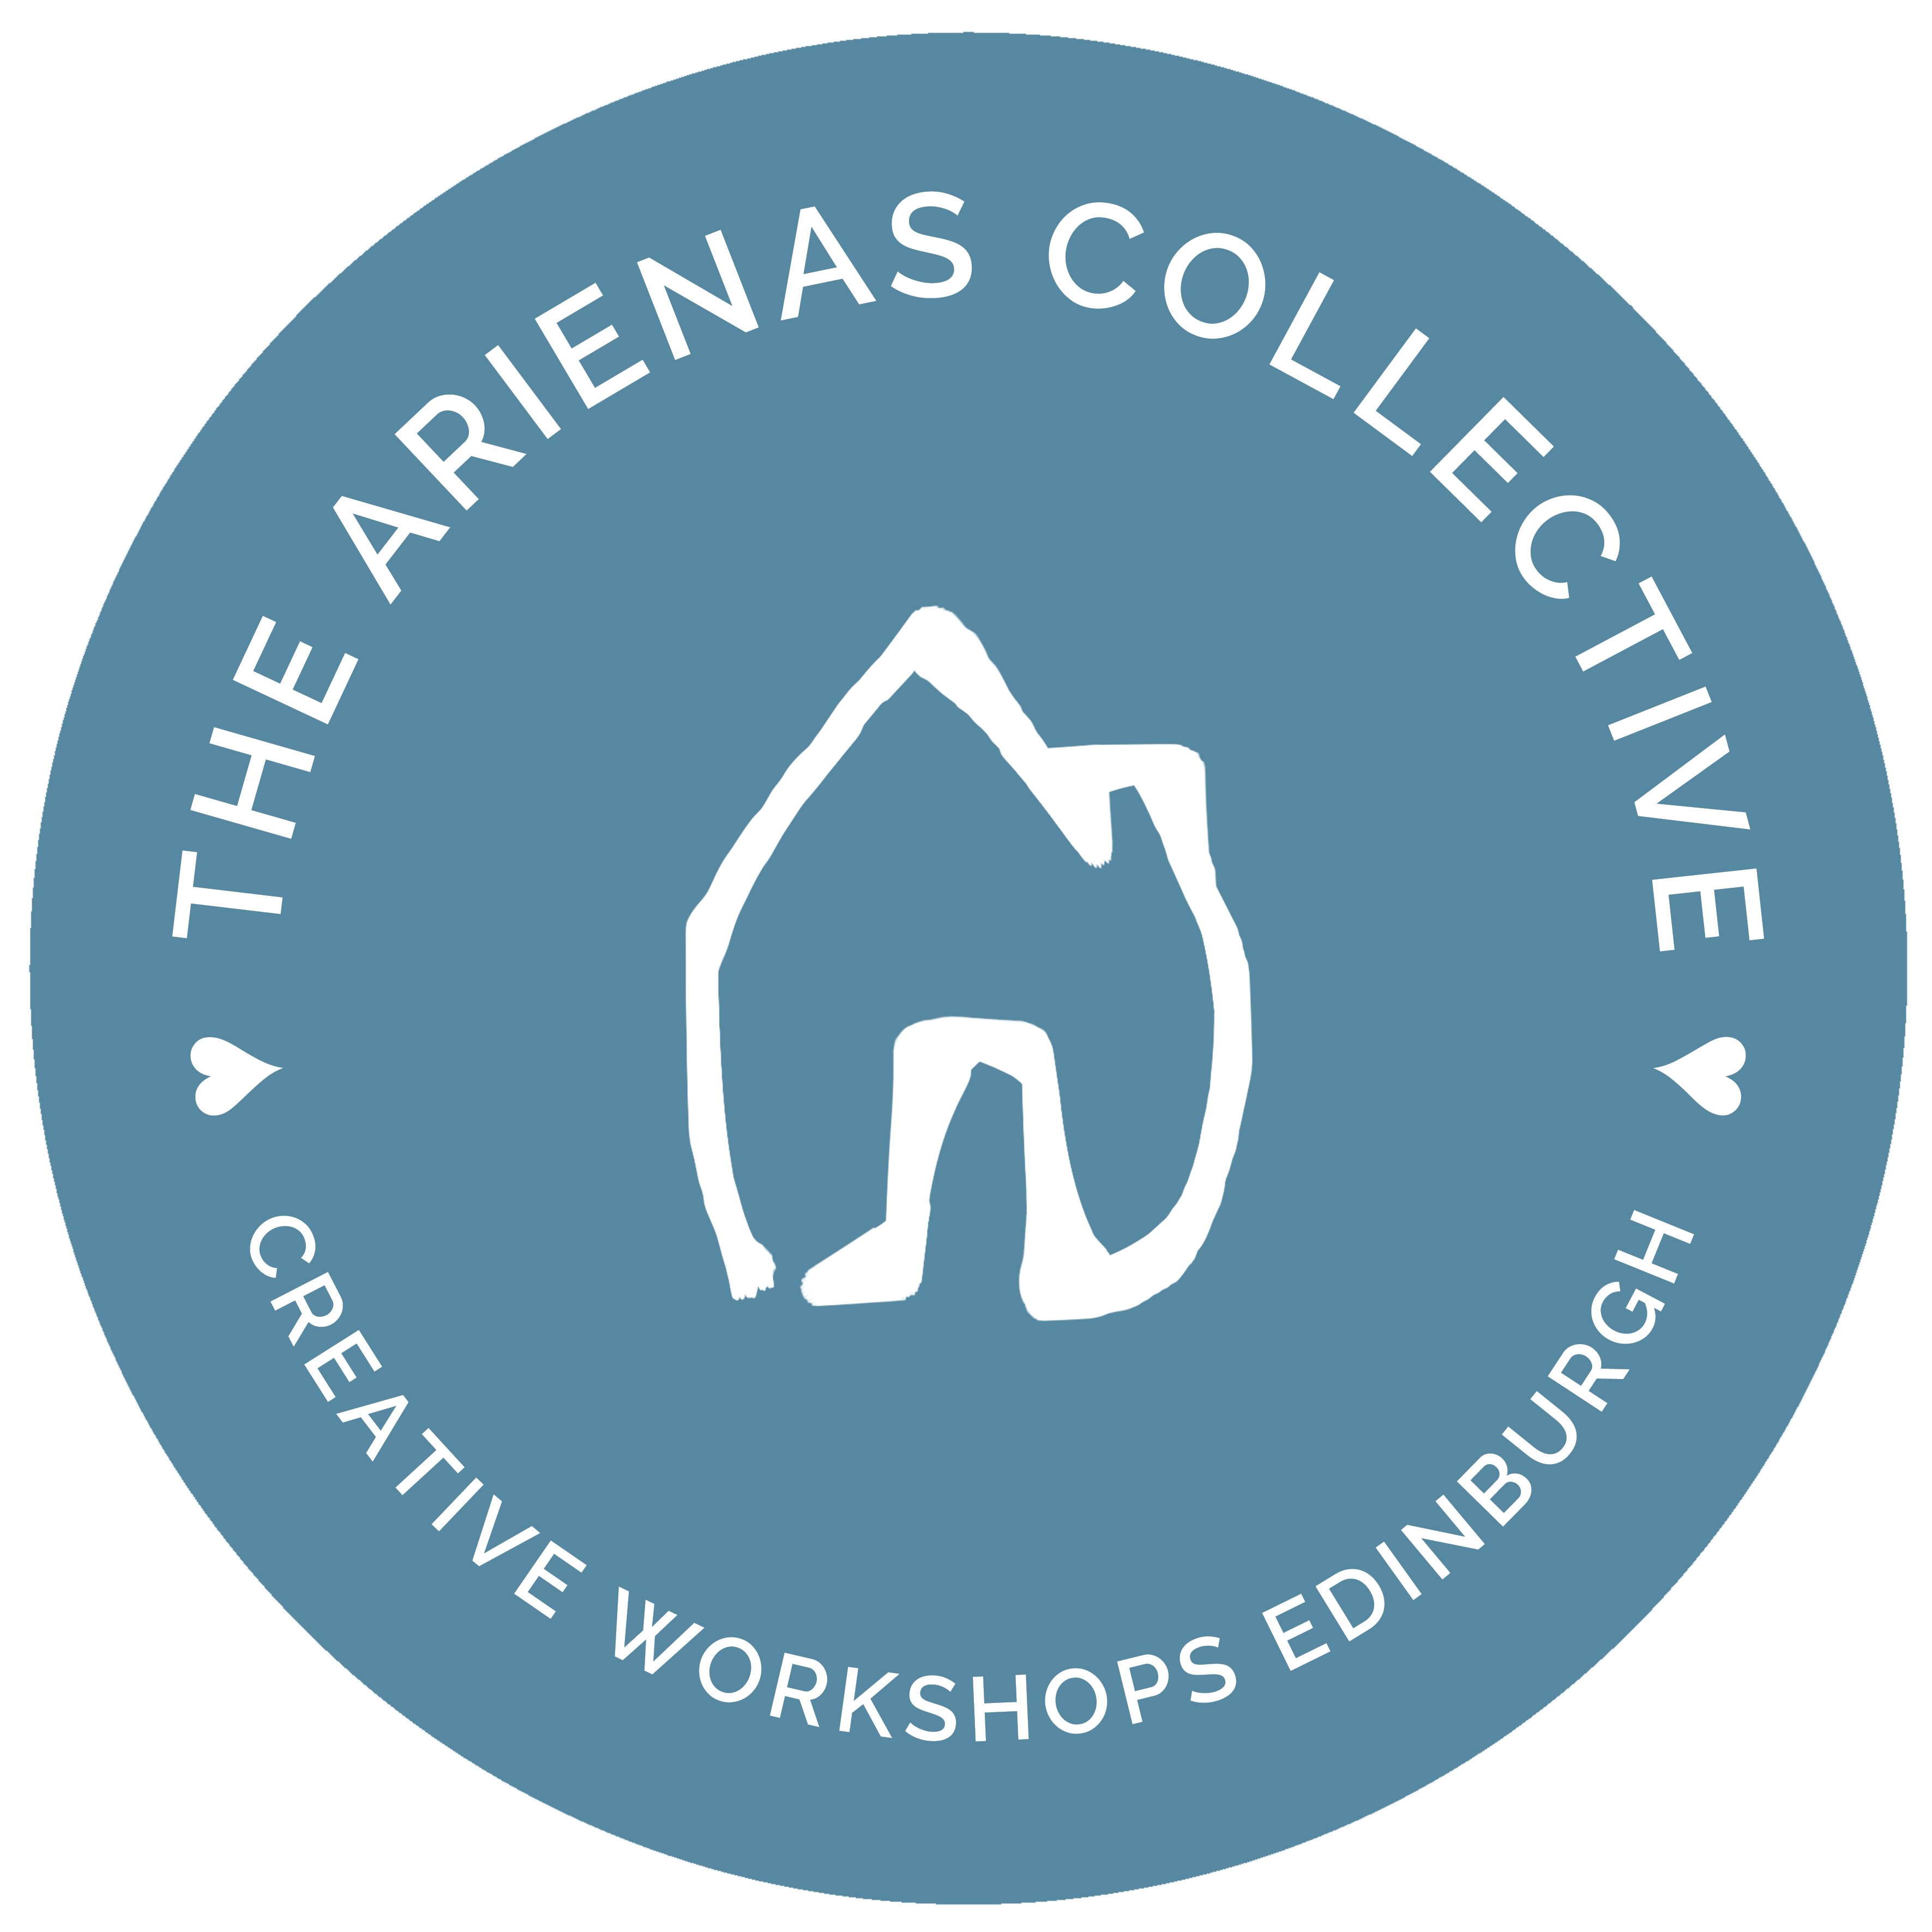 The Arienas Collective logo